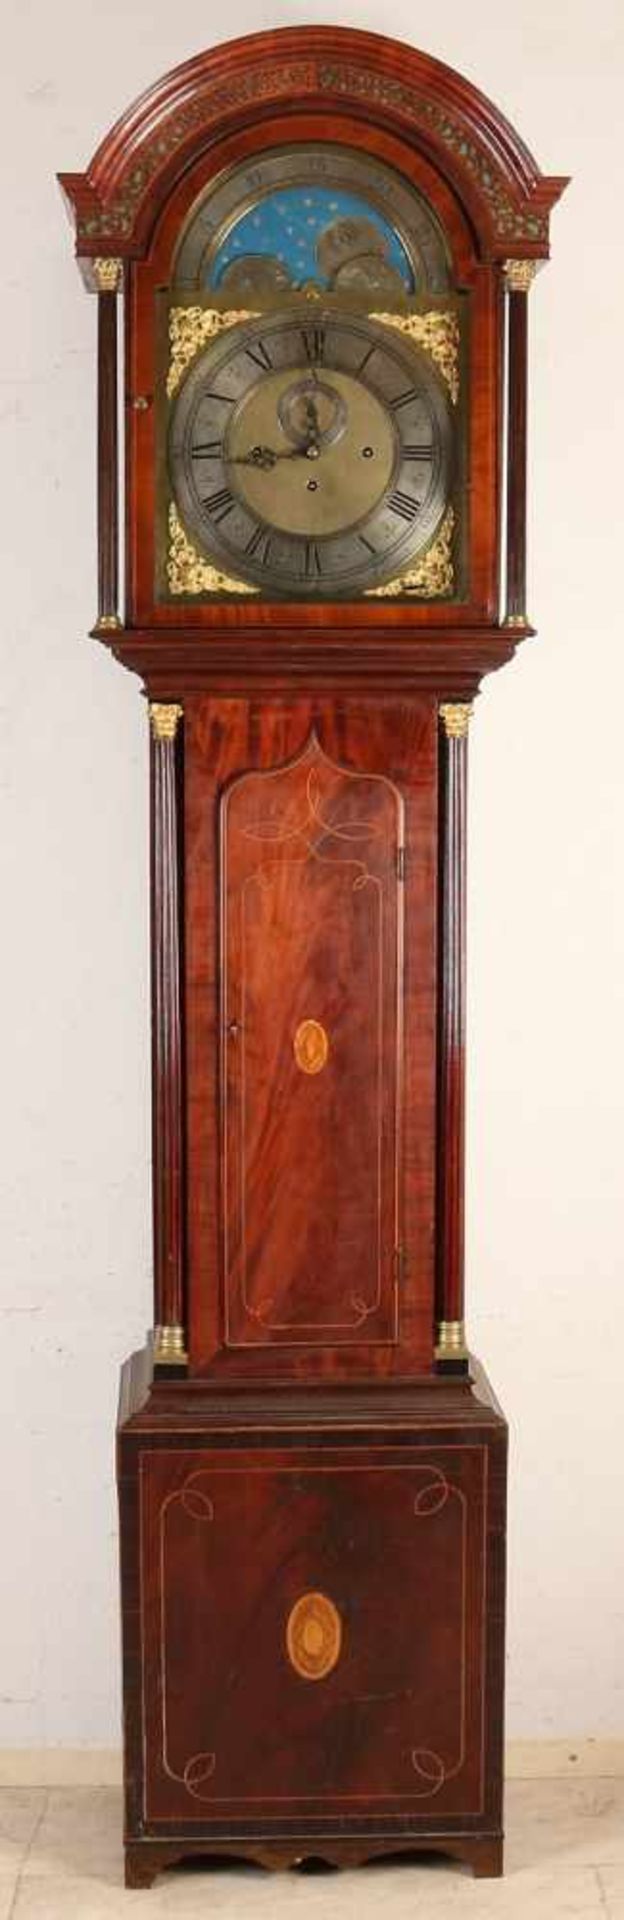 Englische Mahagoni-Standuhr aus dem 19. Jahrhundert mit acht Glocken, Viertelschlag, Sekunden und